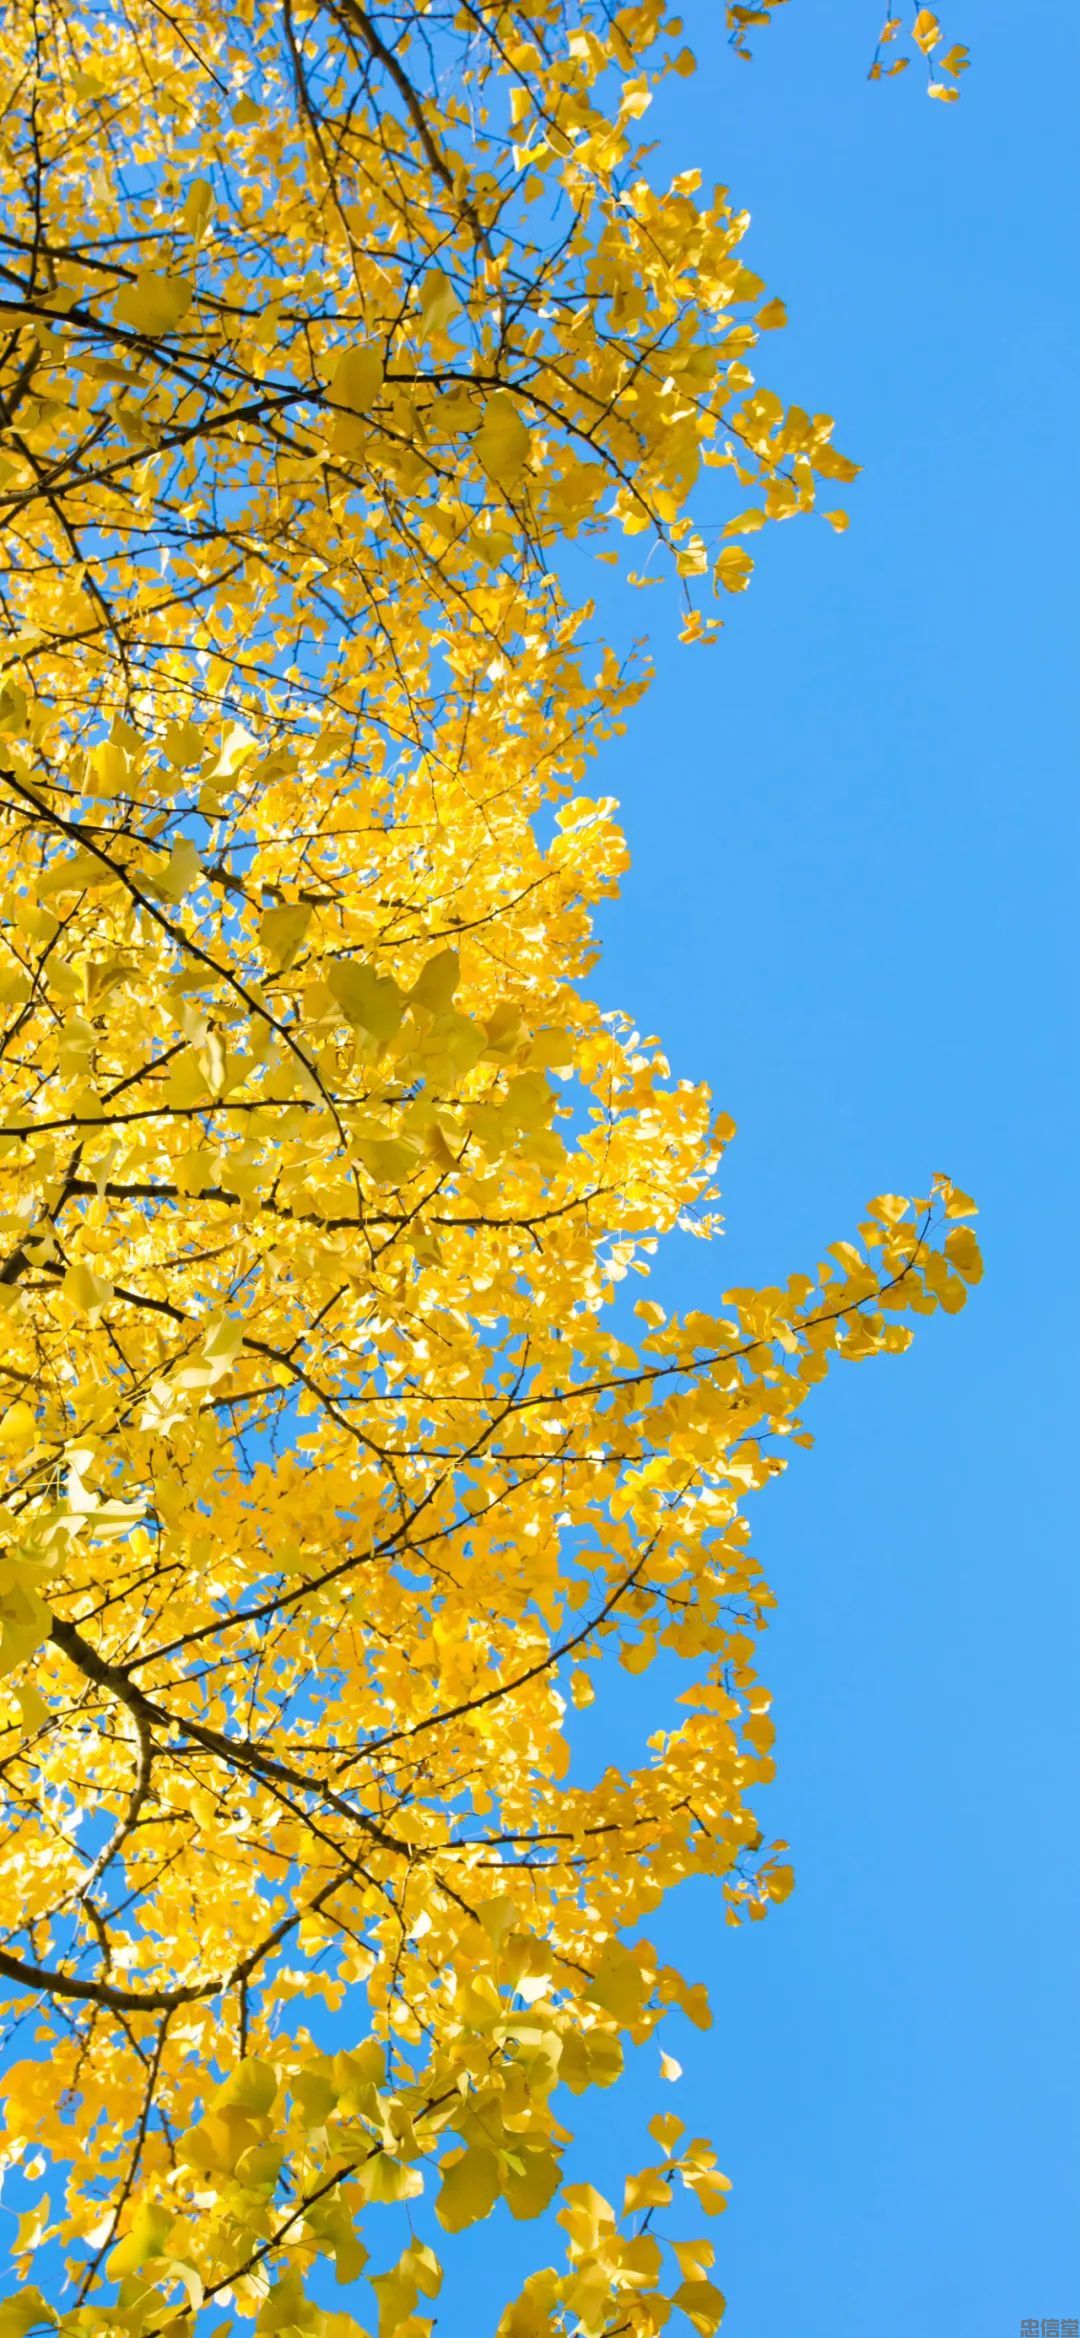 金黄色的秋天风景手机壁纸高清竖屏图片大全集(图6)